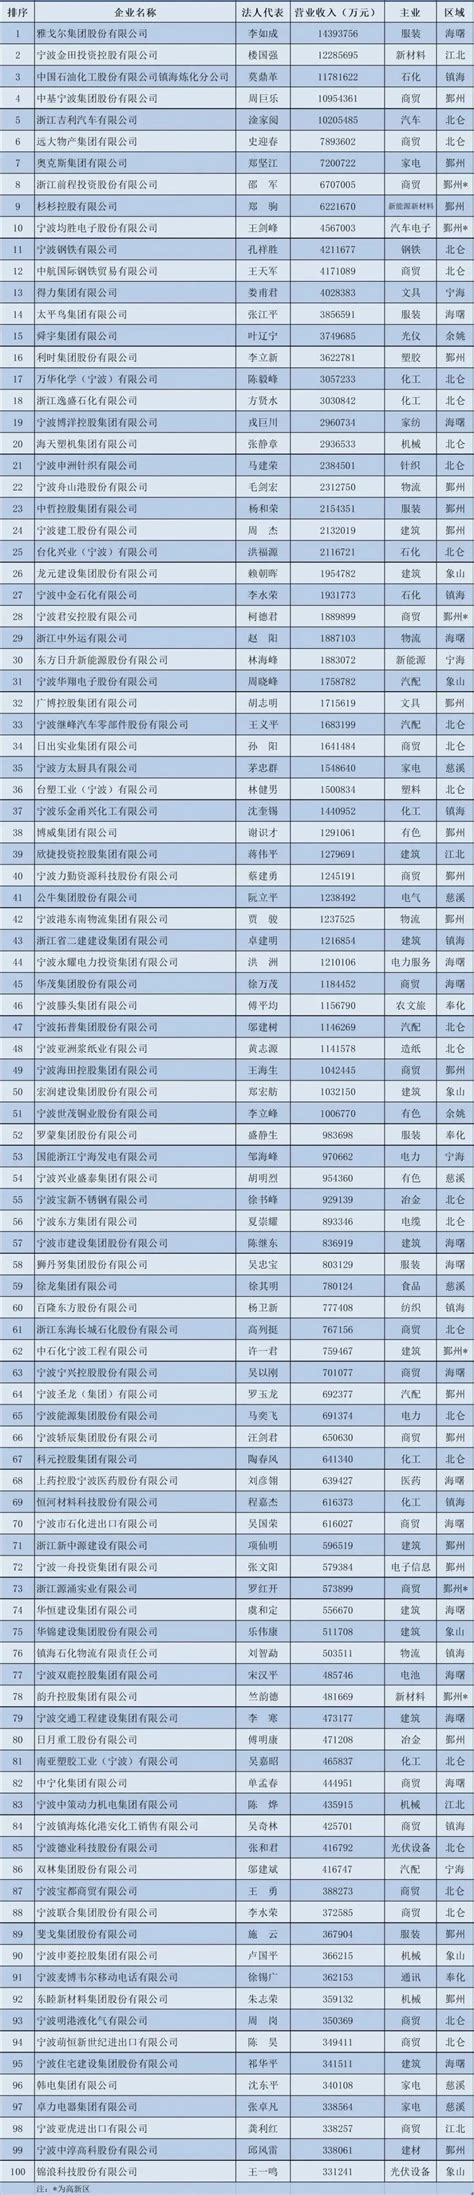 2022宁波创业创新风云榜揭晓 33个新榜单等你来看-新闻中心-中国宁波网